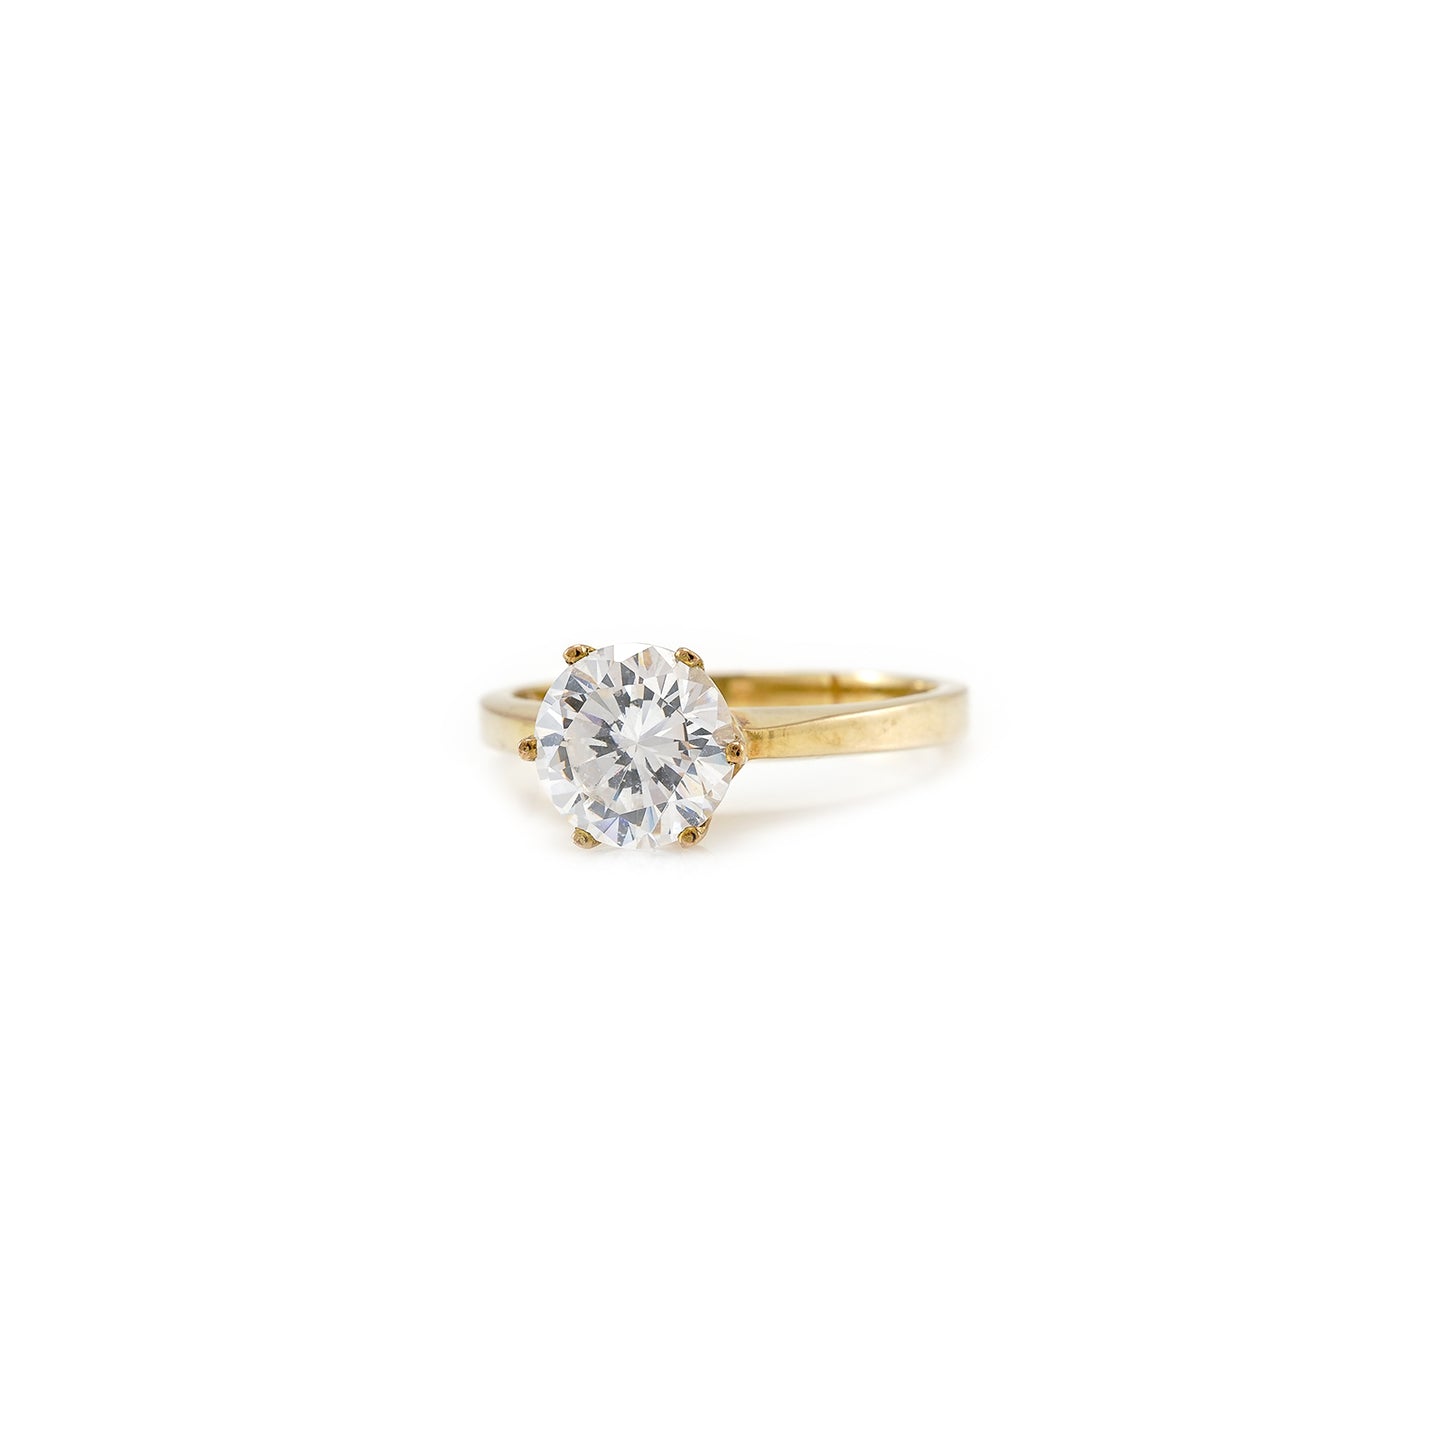 Engagement ring zirconia yellow gold 8K women's jewelry wedding ring gold ring engagement ring